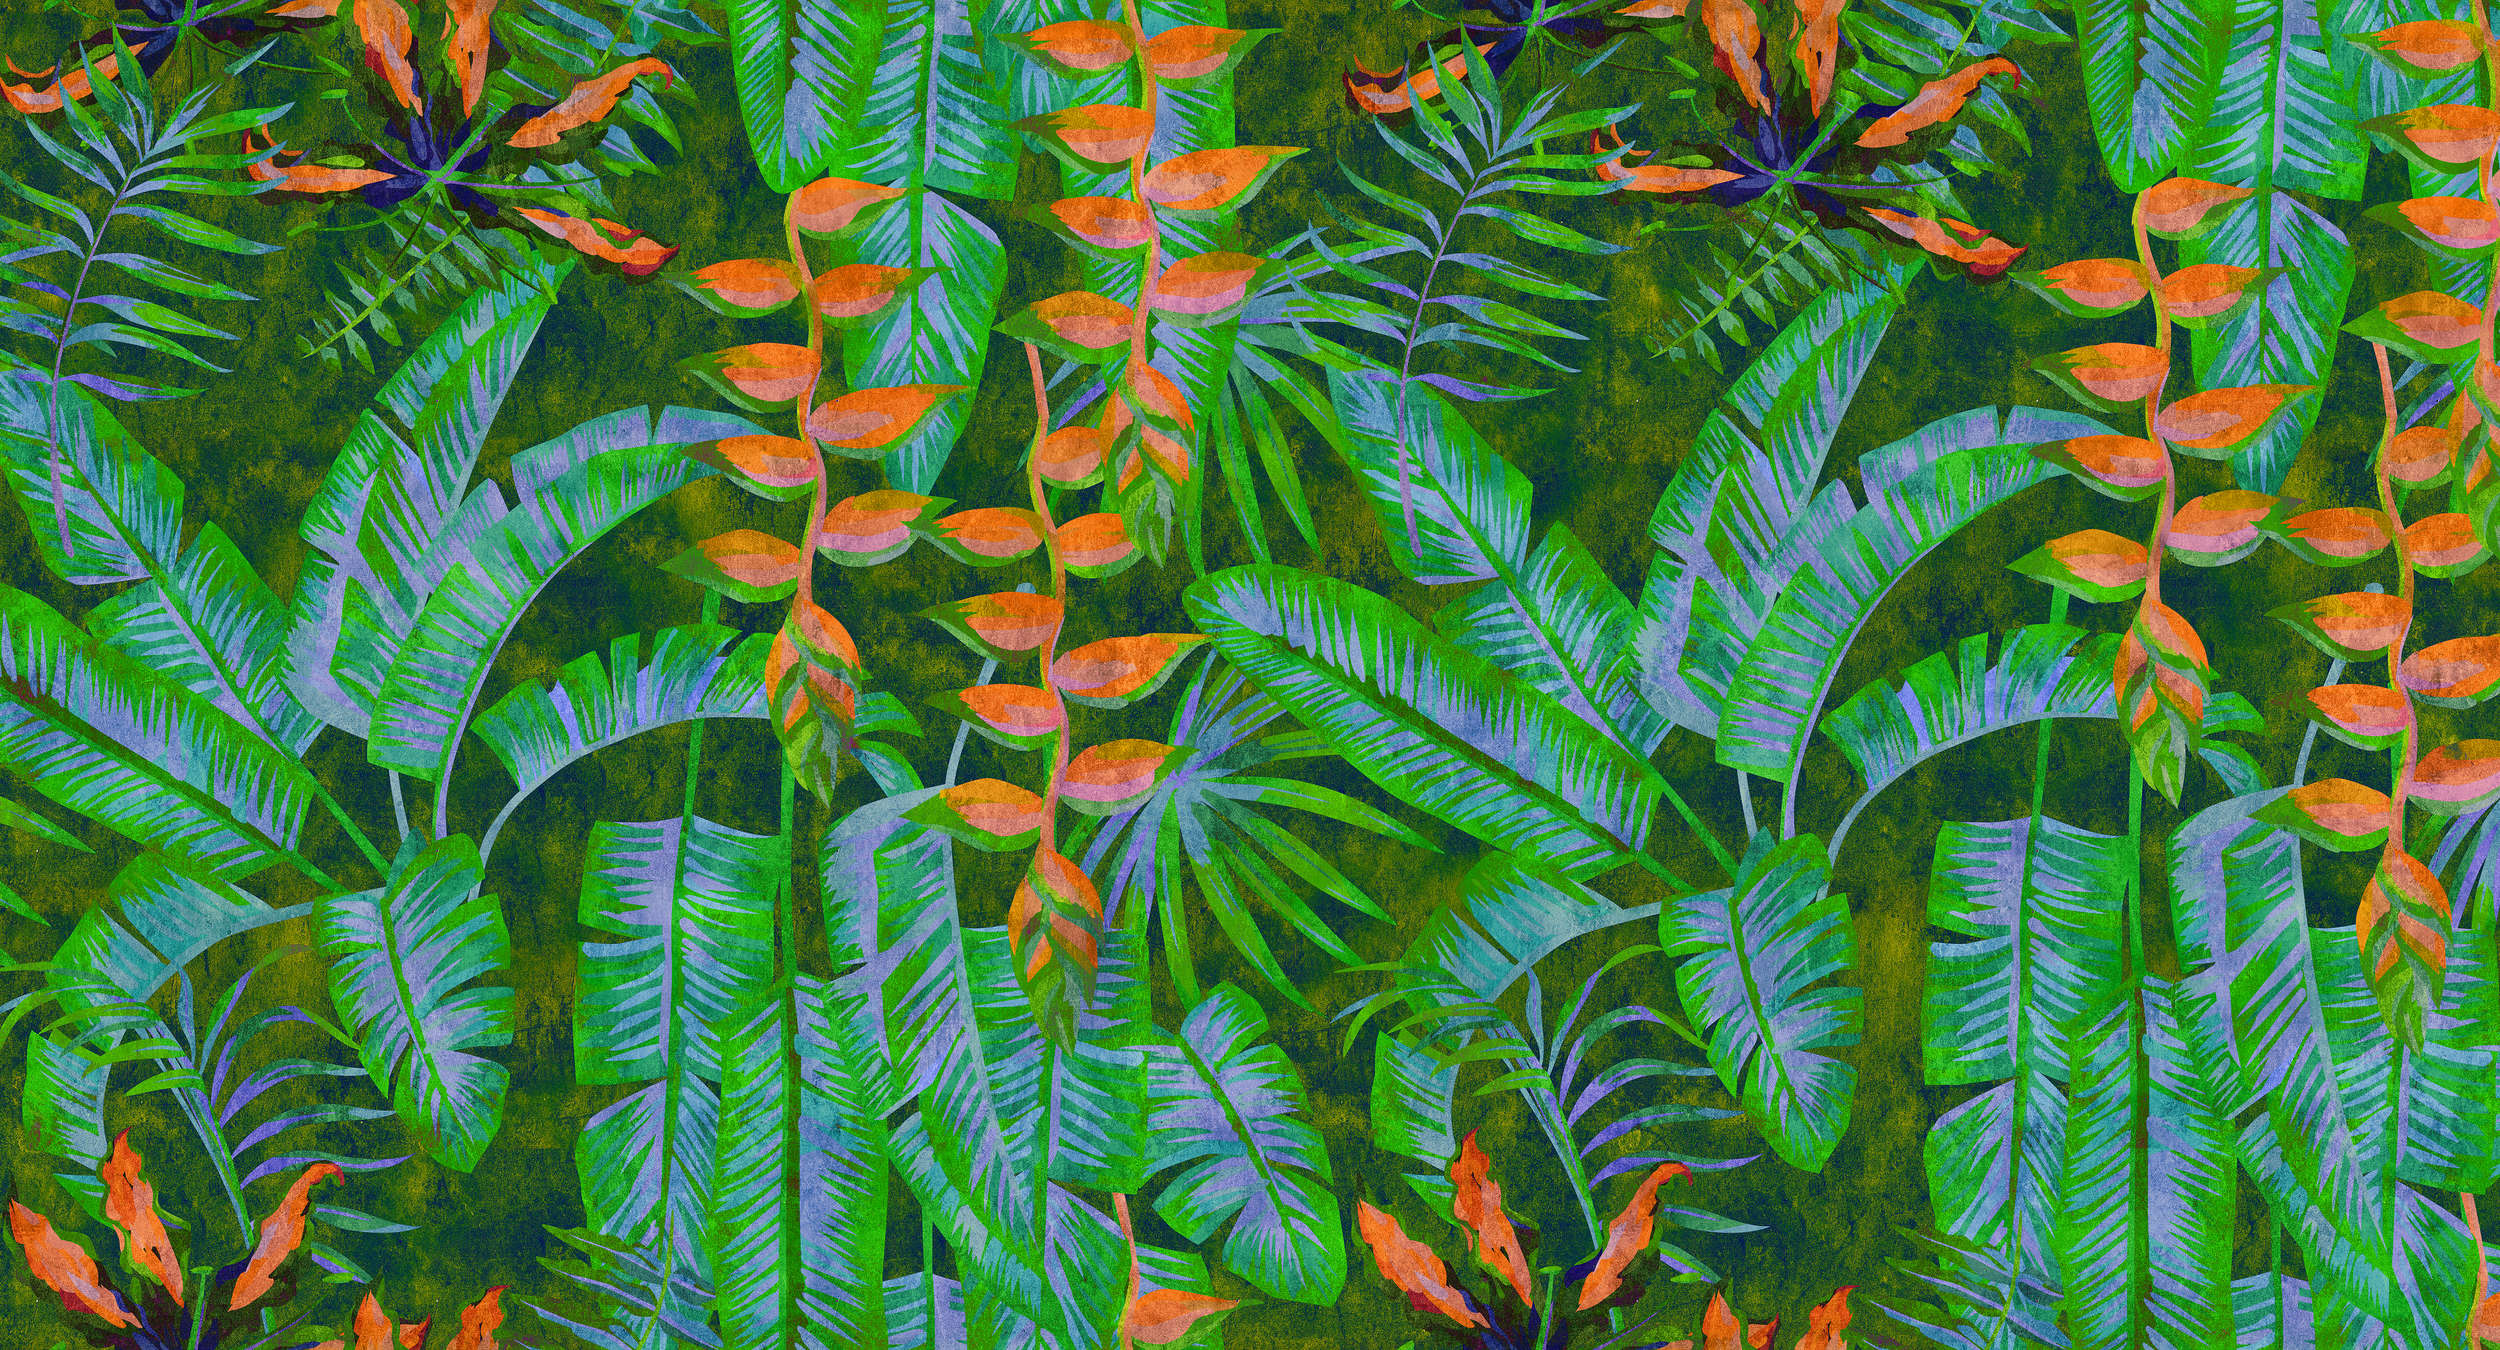             Tropicana 4 - Carta da parati Jungle con colori vivaci - Natura qualita consistenza in carta assorbente - Verde, Arancione | Vello liscio premium
        